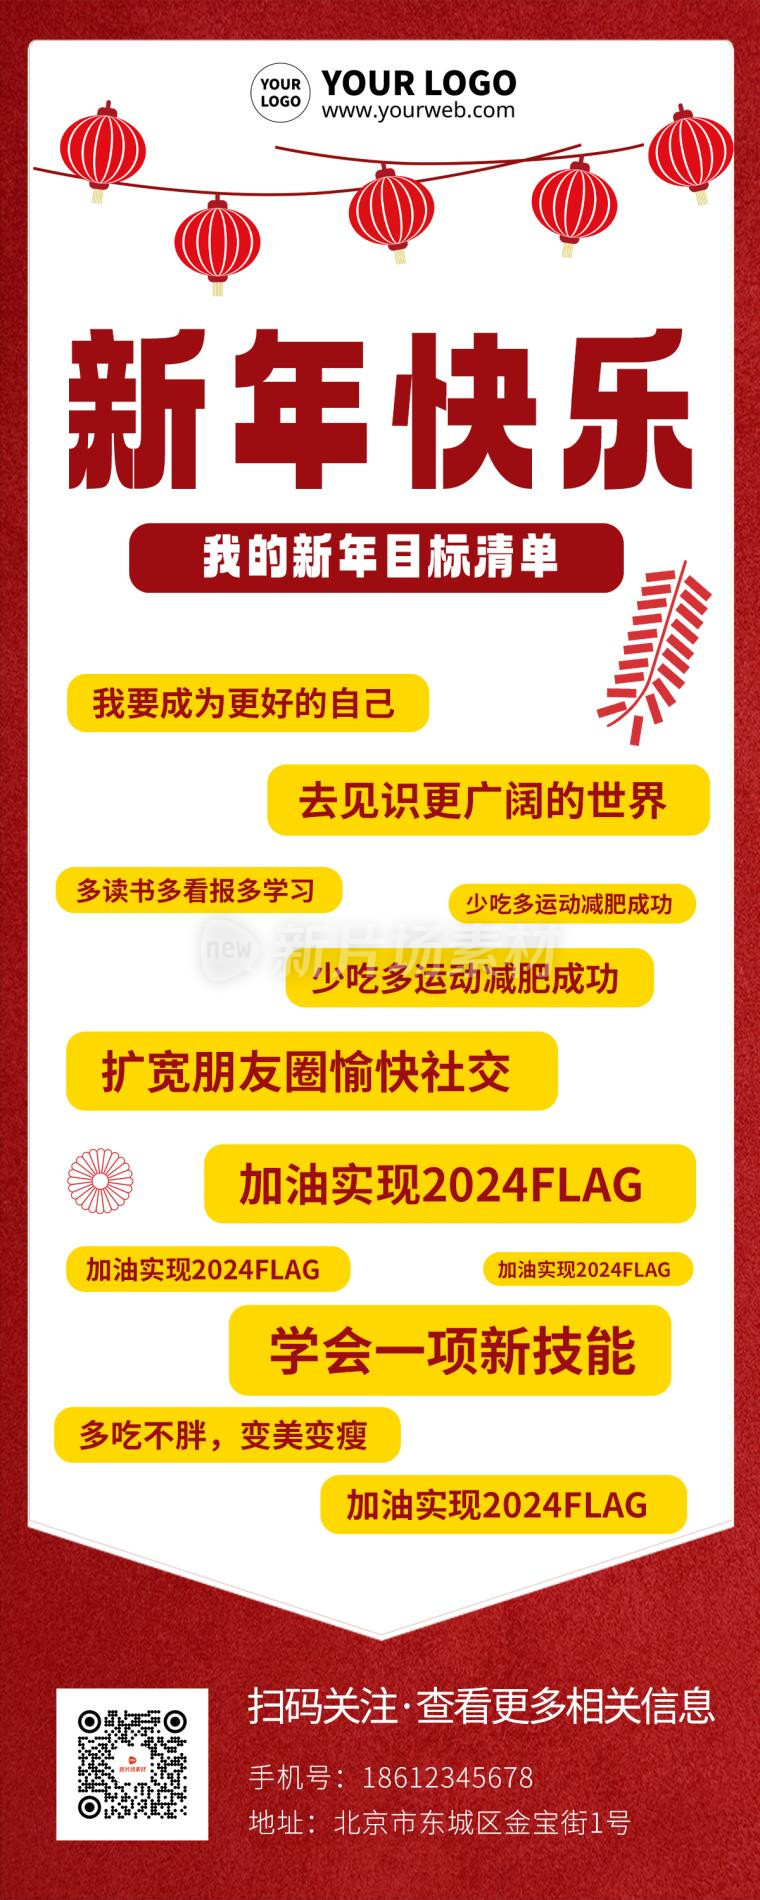 新年快乐愿望清单中国风海报长图